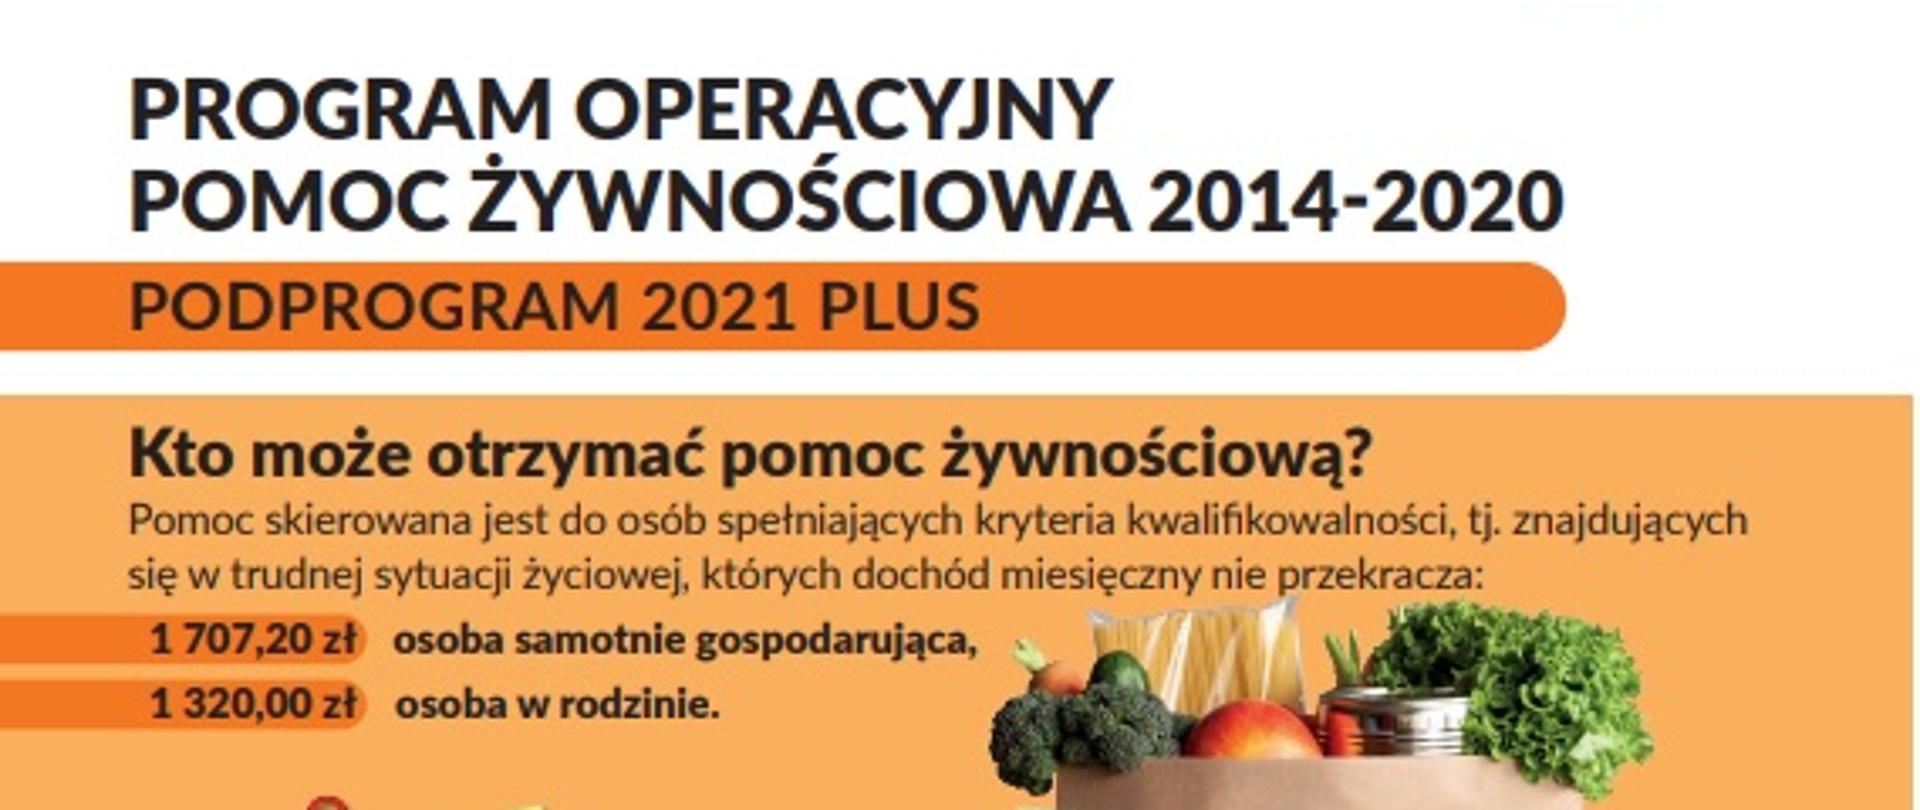 Program operacyjny pomoc żywnościowa 2014-2020